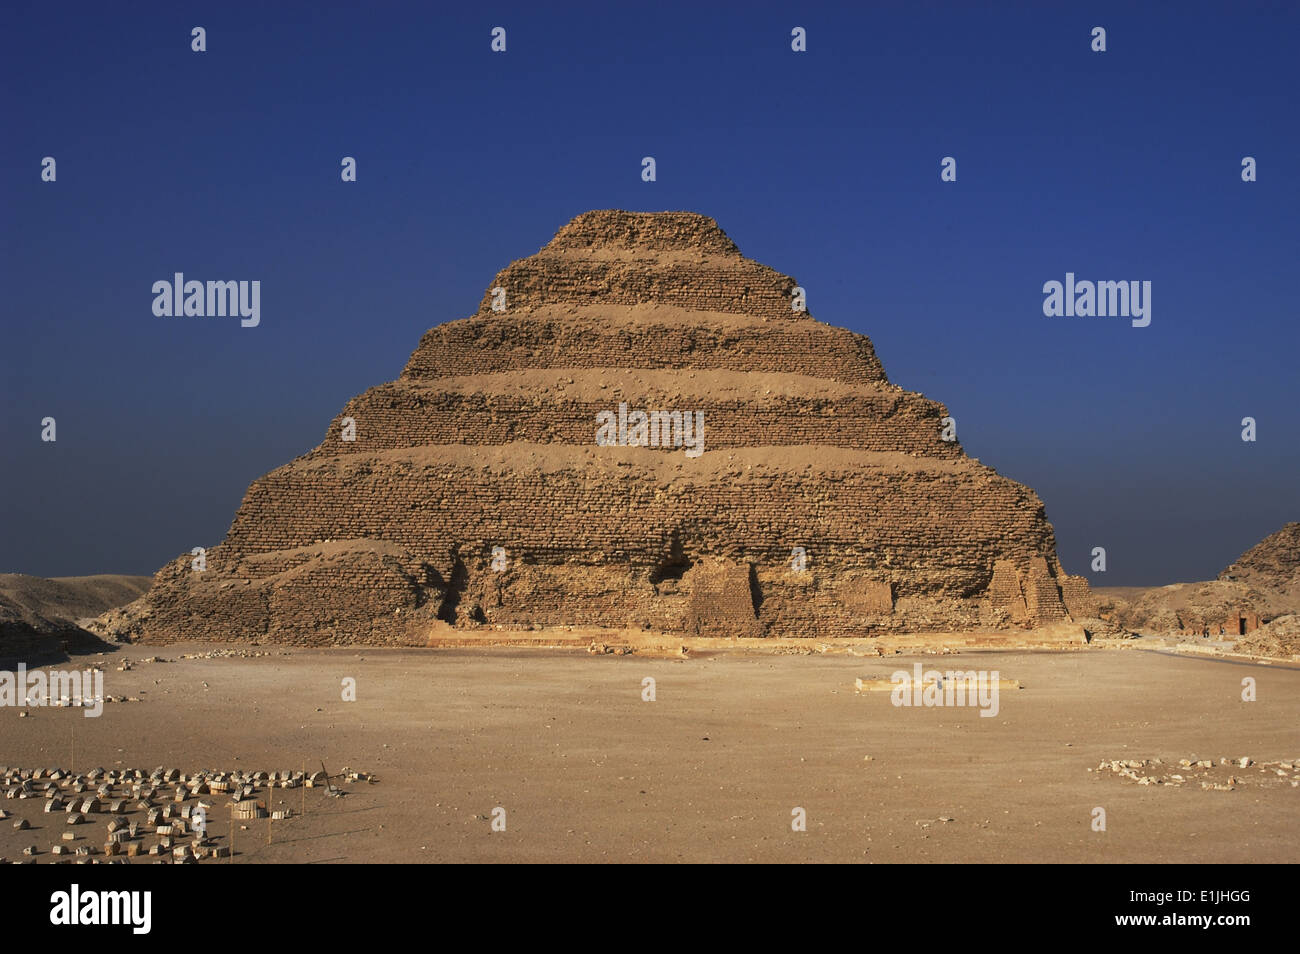 Egipto. La necrópolis de Saqqara. La Pirámide de Djoser (Zoser) o paso pirámide construida por Imhotep. Tercera dinastía. Antiguo Reino. Foto de stock